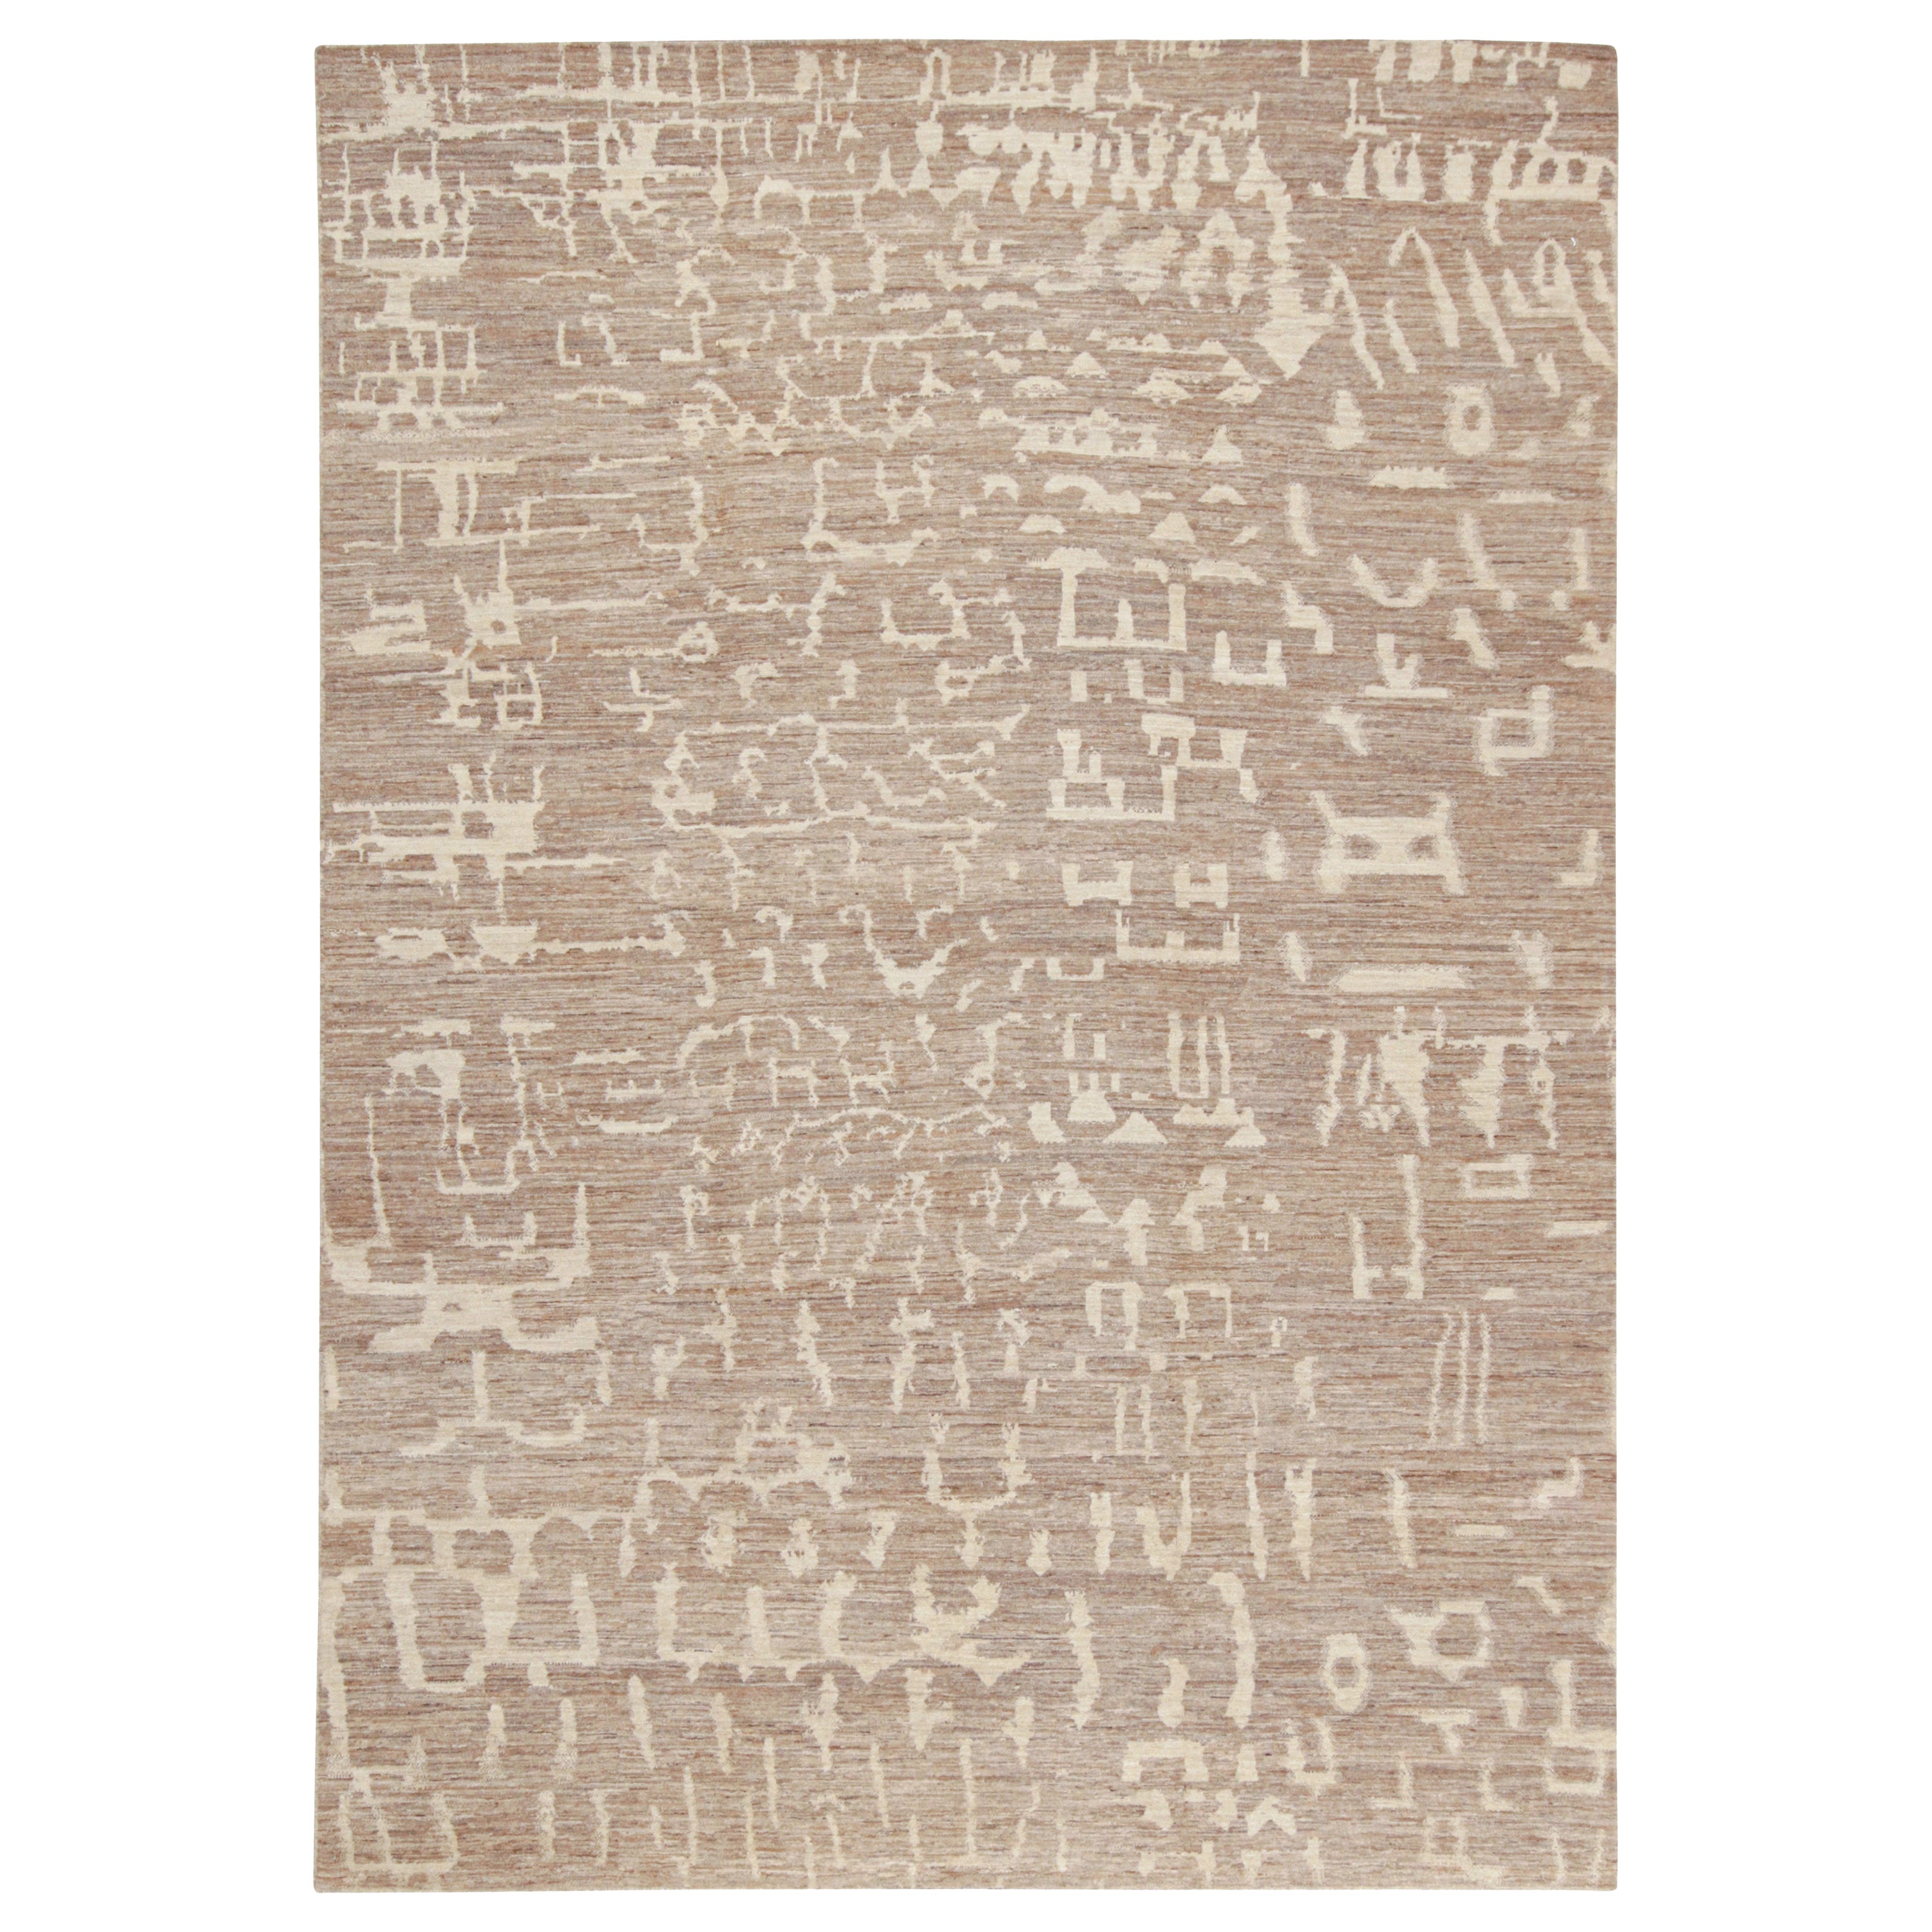 Zeitgenössischer abstrakter Teppich von Rug & Kilim mit beige-braunen, geometrischen Mustern